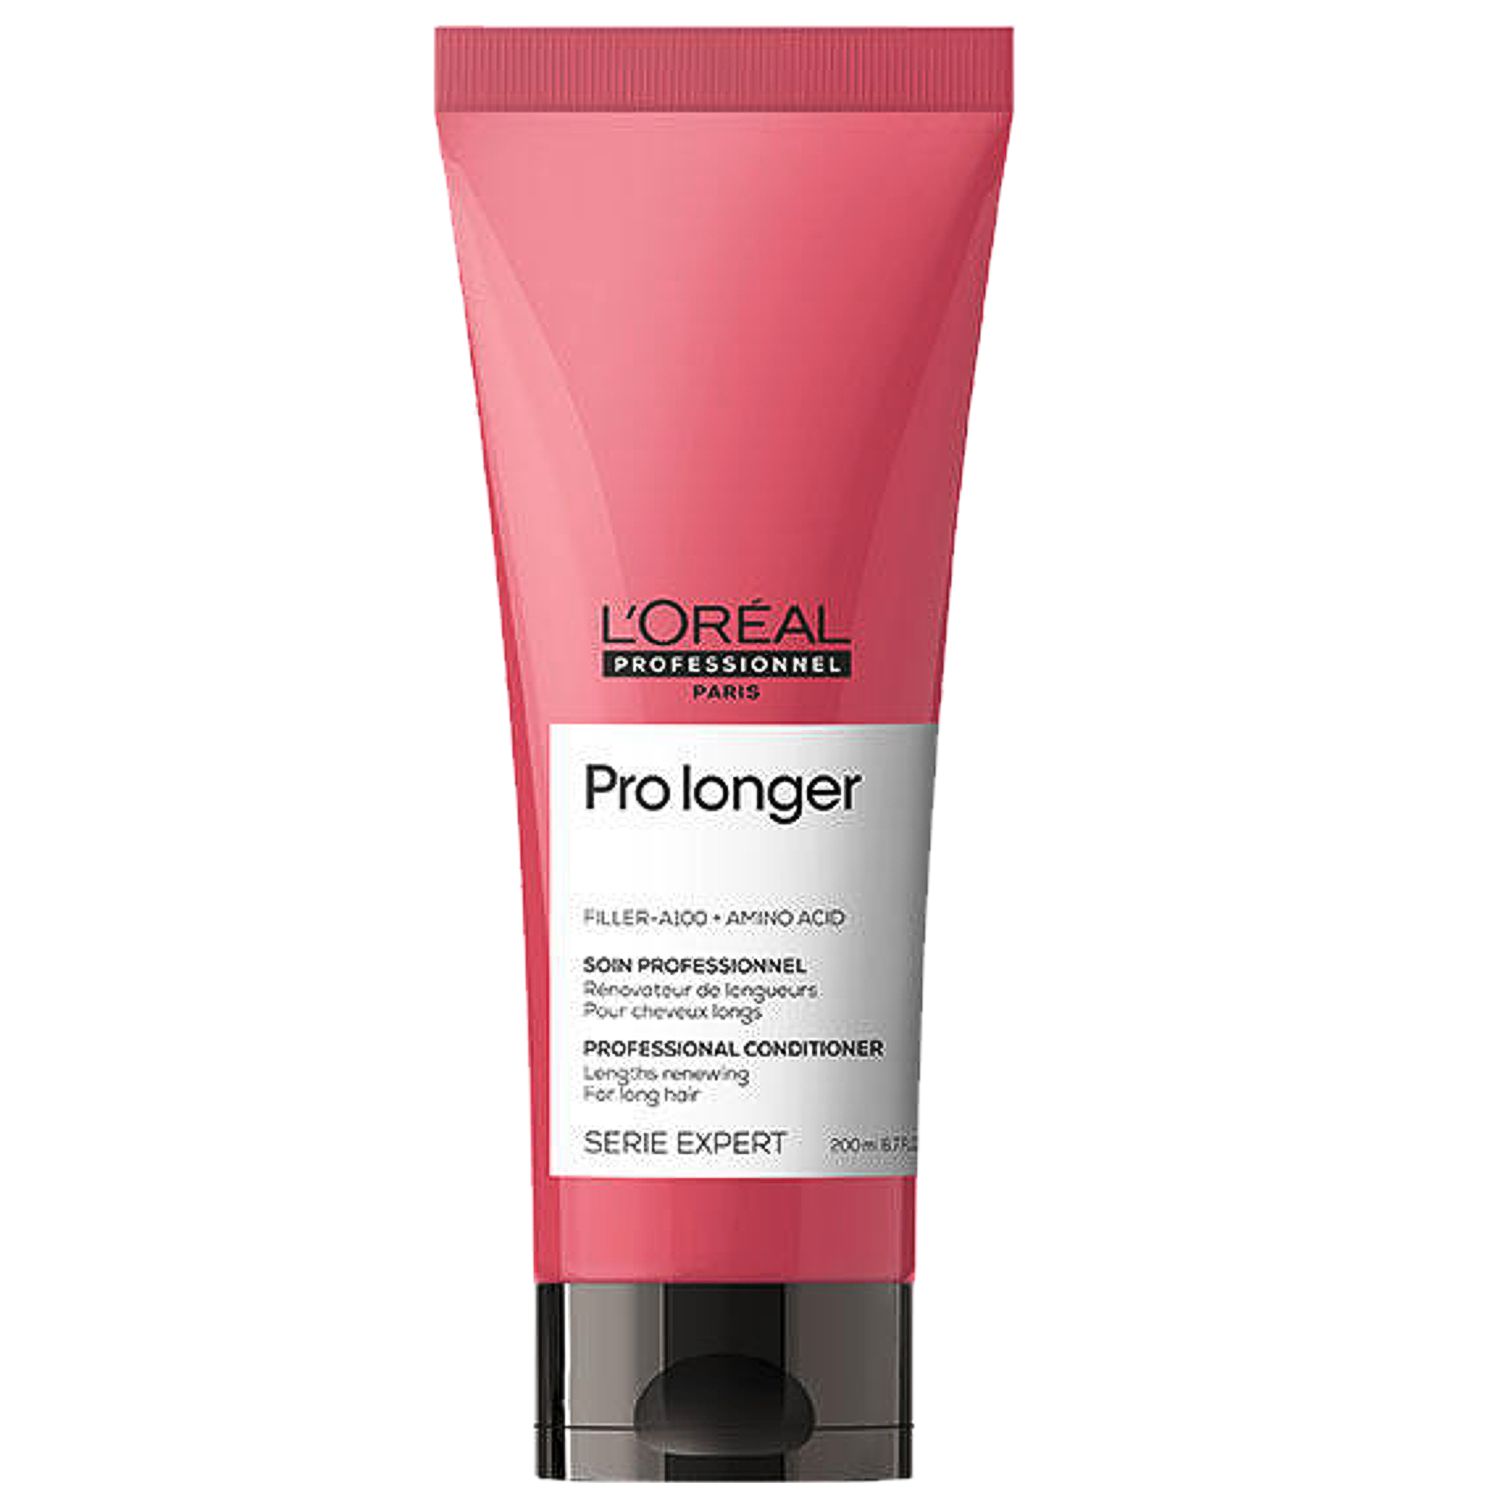 L'Oréal Expert PRO LONGER Professional Conditioner 200 ml